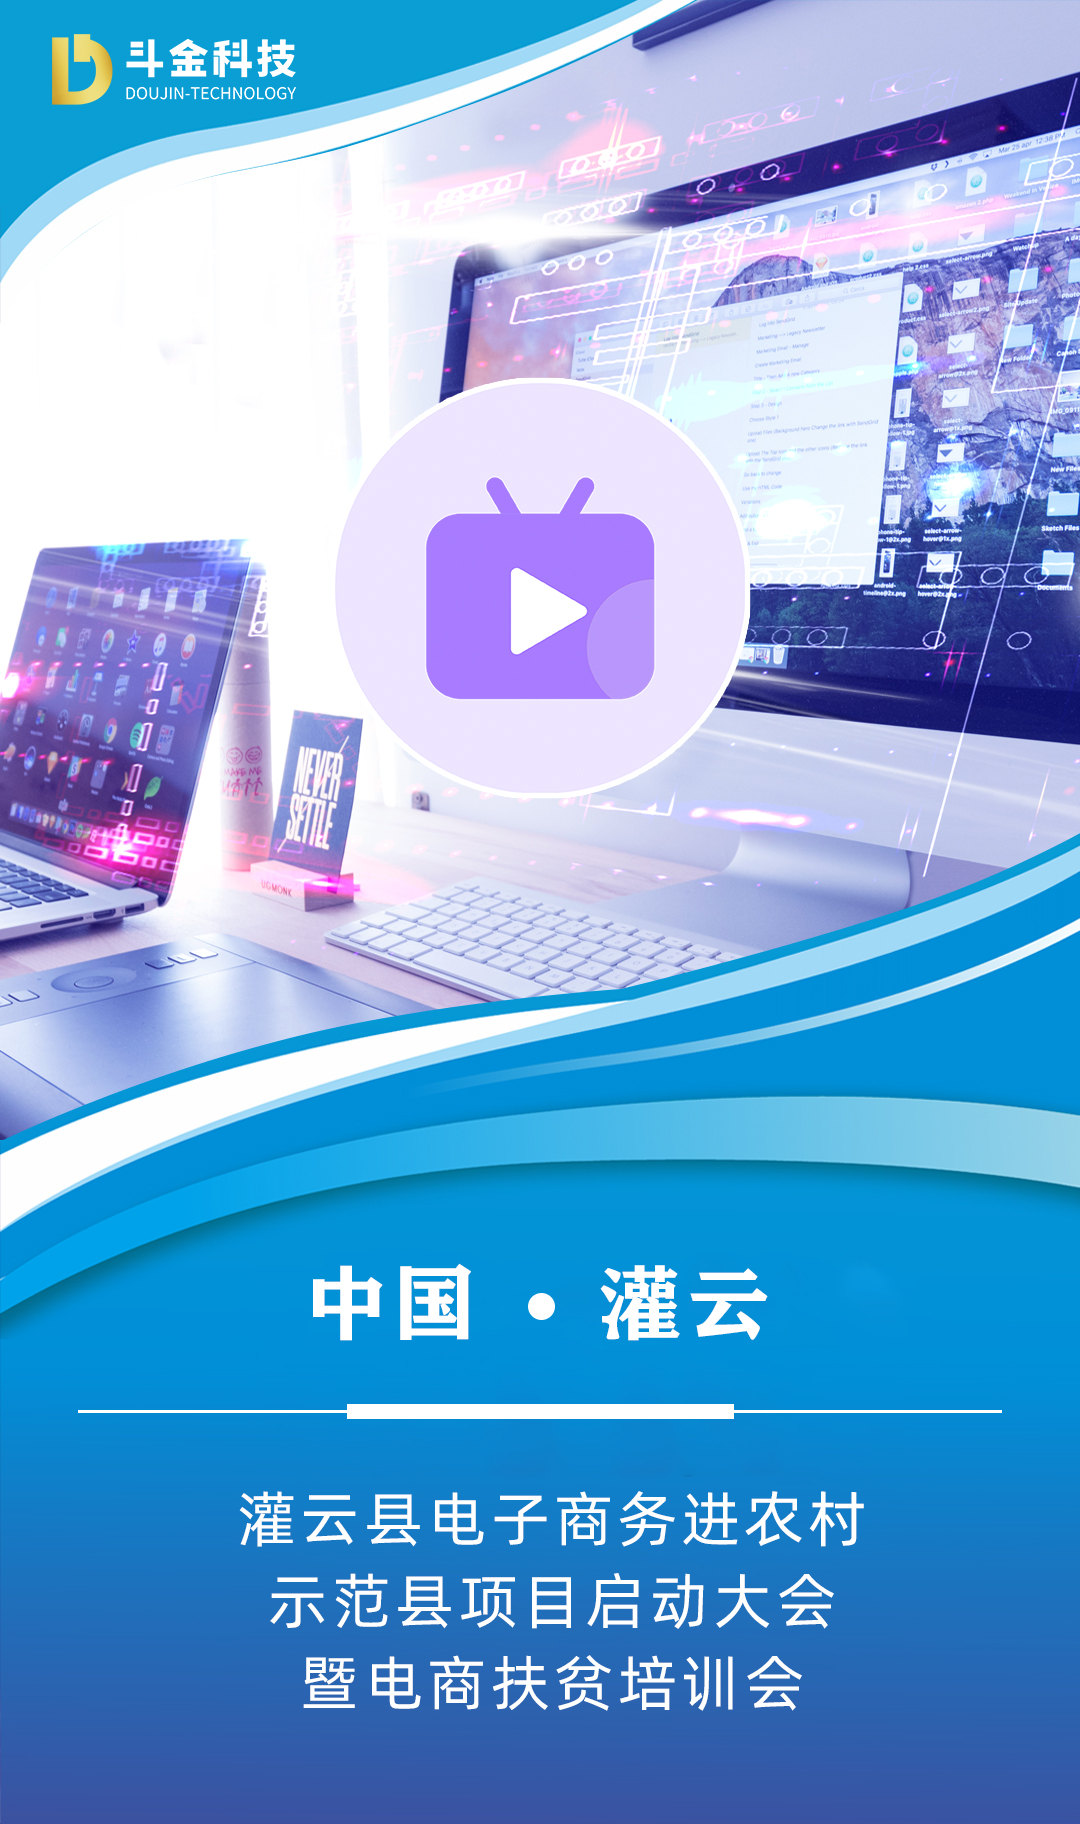 灌云县国家级电子商务进农村综合示范项目启动大会即将召开